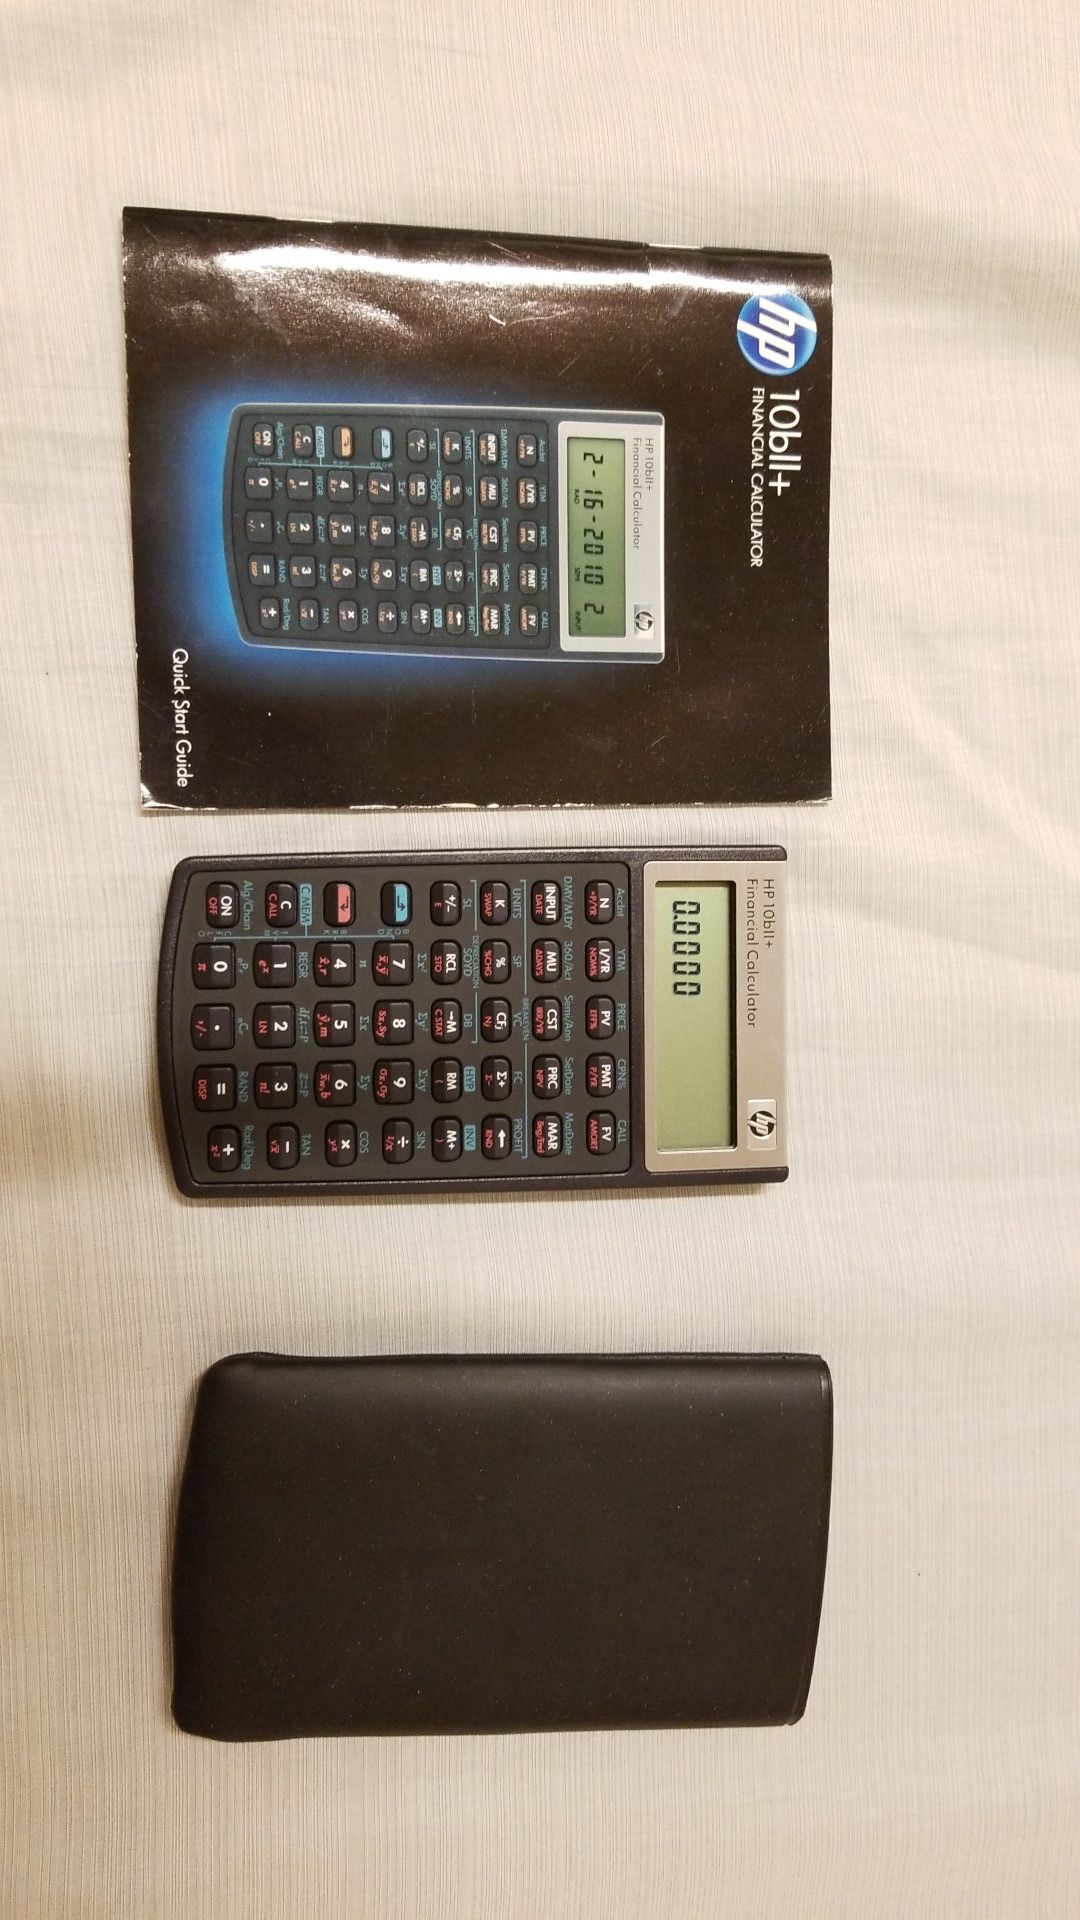 HP 10bll+ Financial Calculator